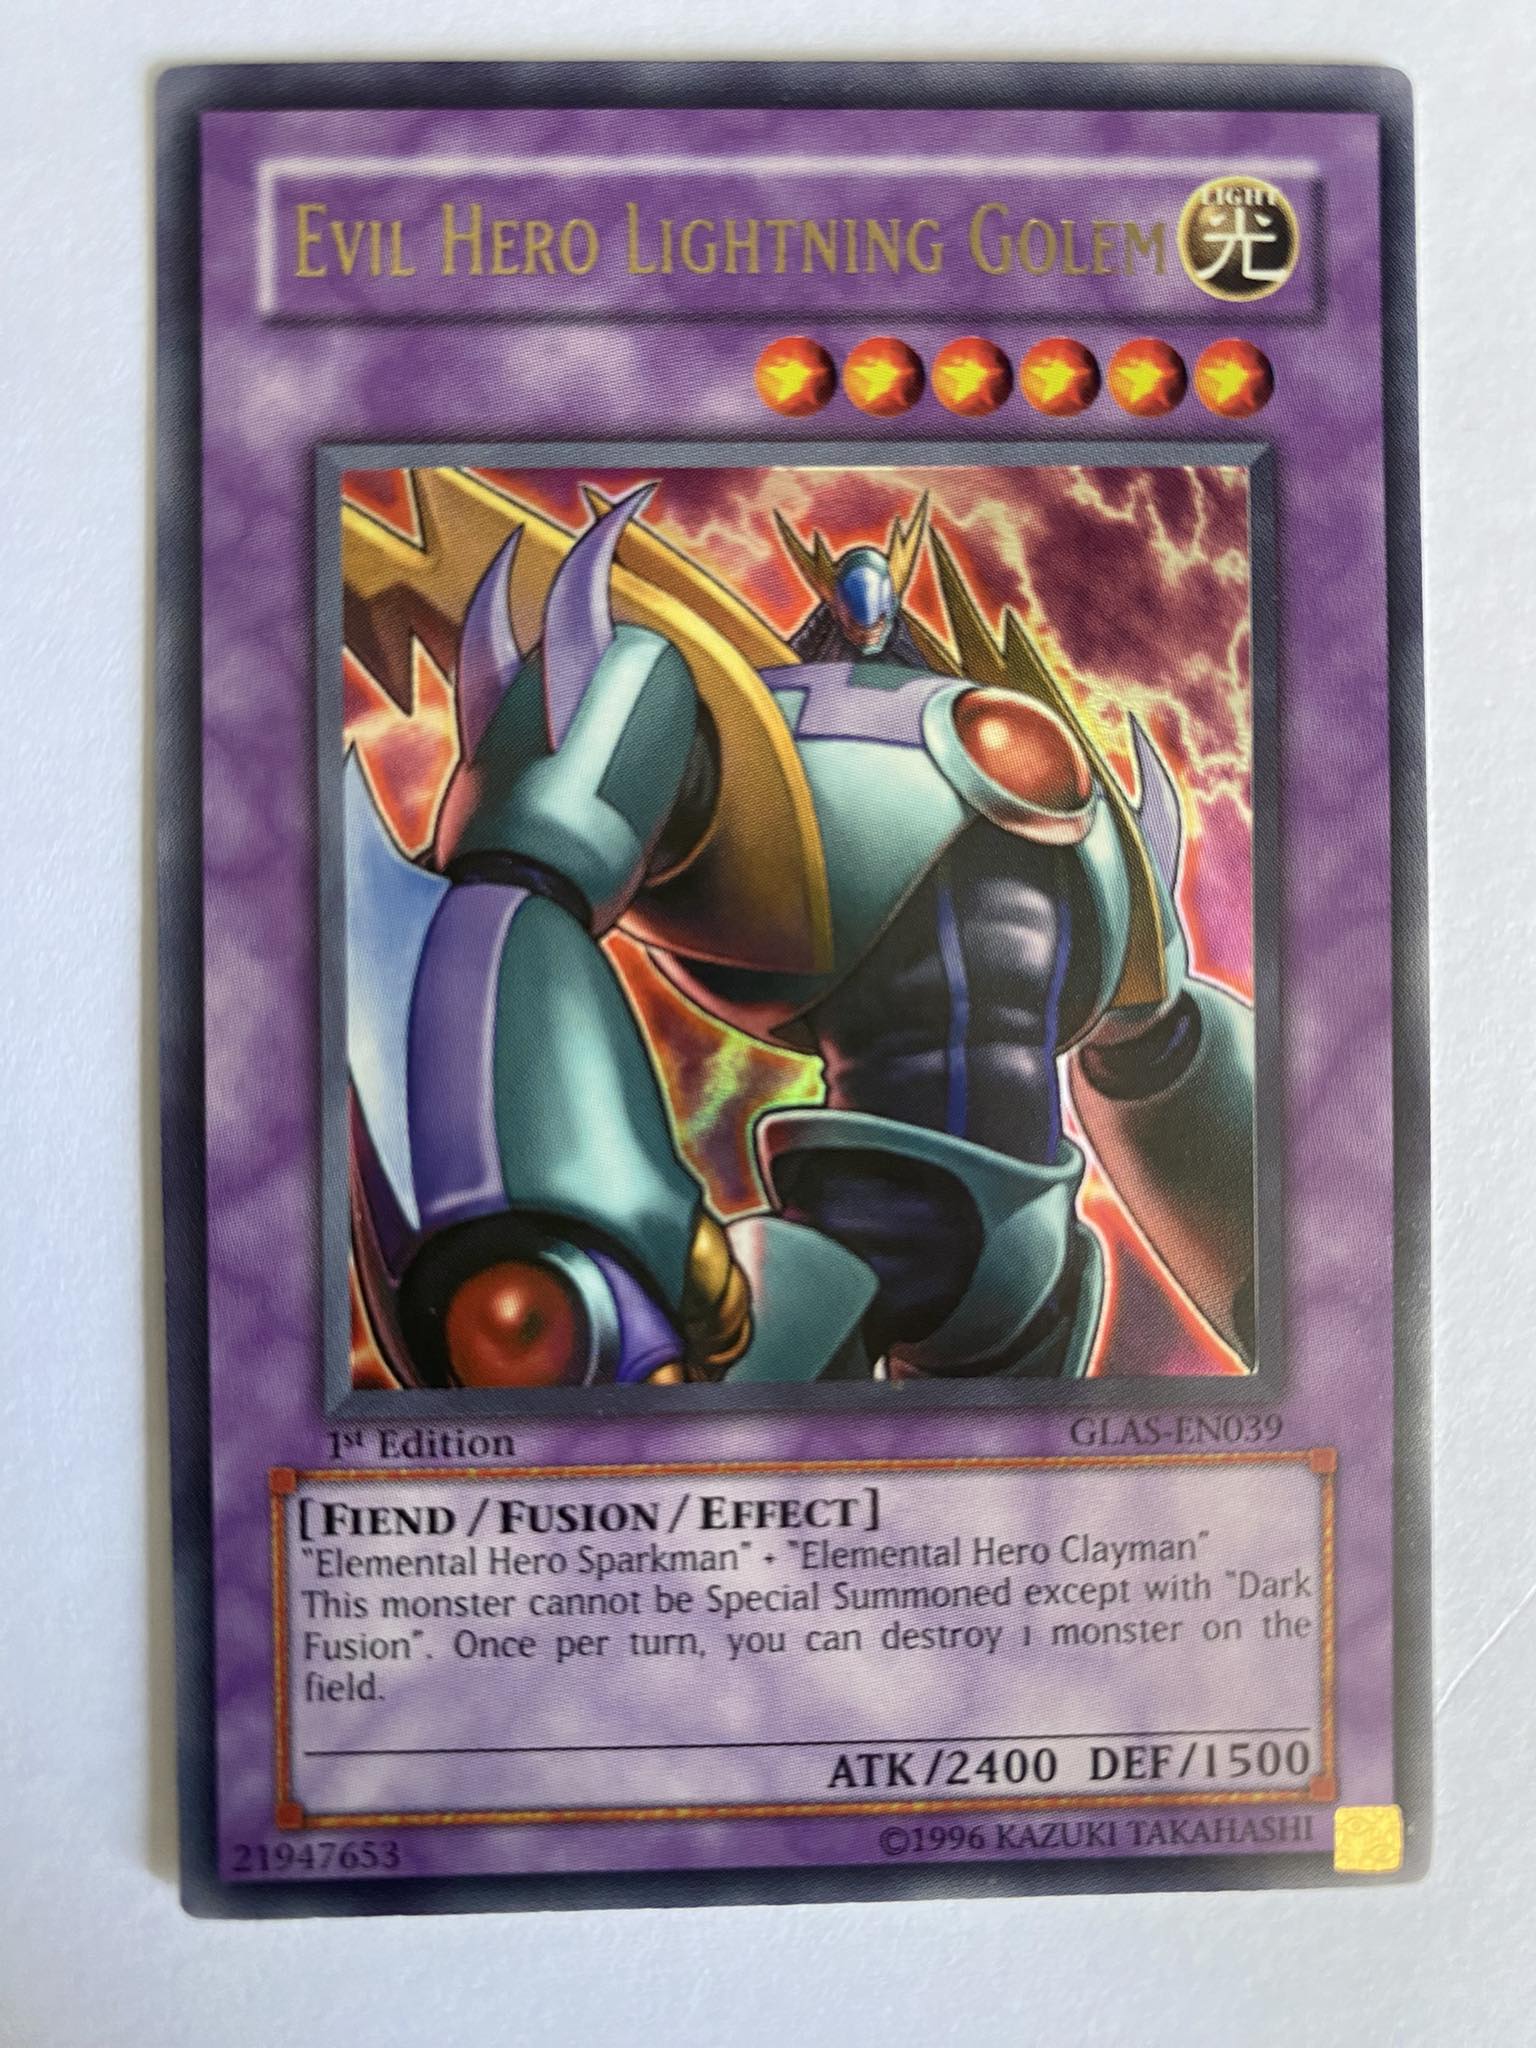 Evil Hero Lightning Golem Carta Yugi GLAS-EN039 Ultra Rare